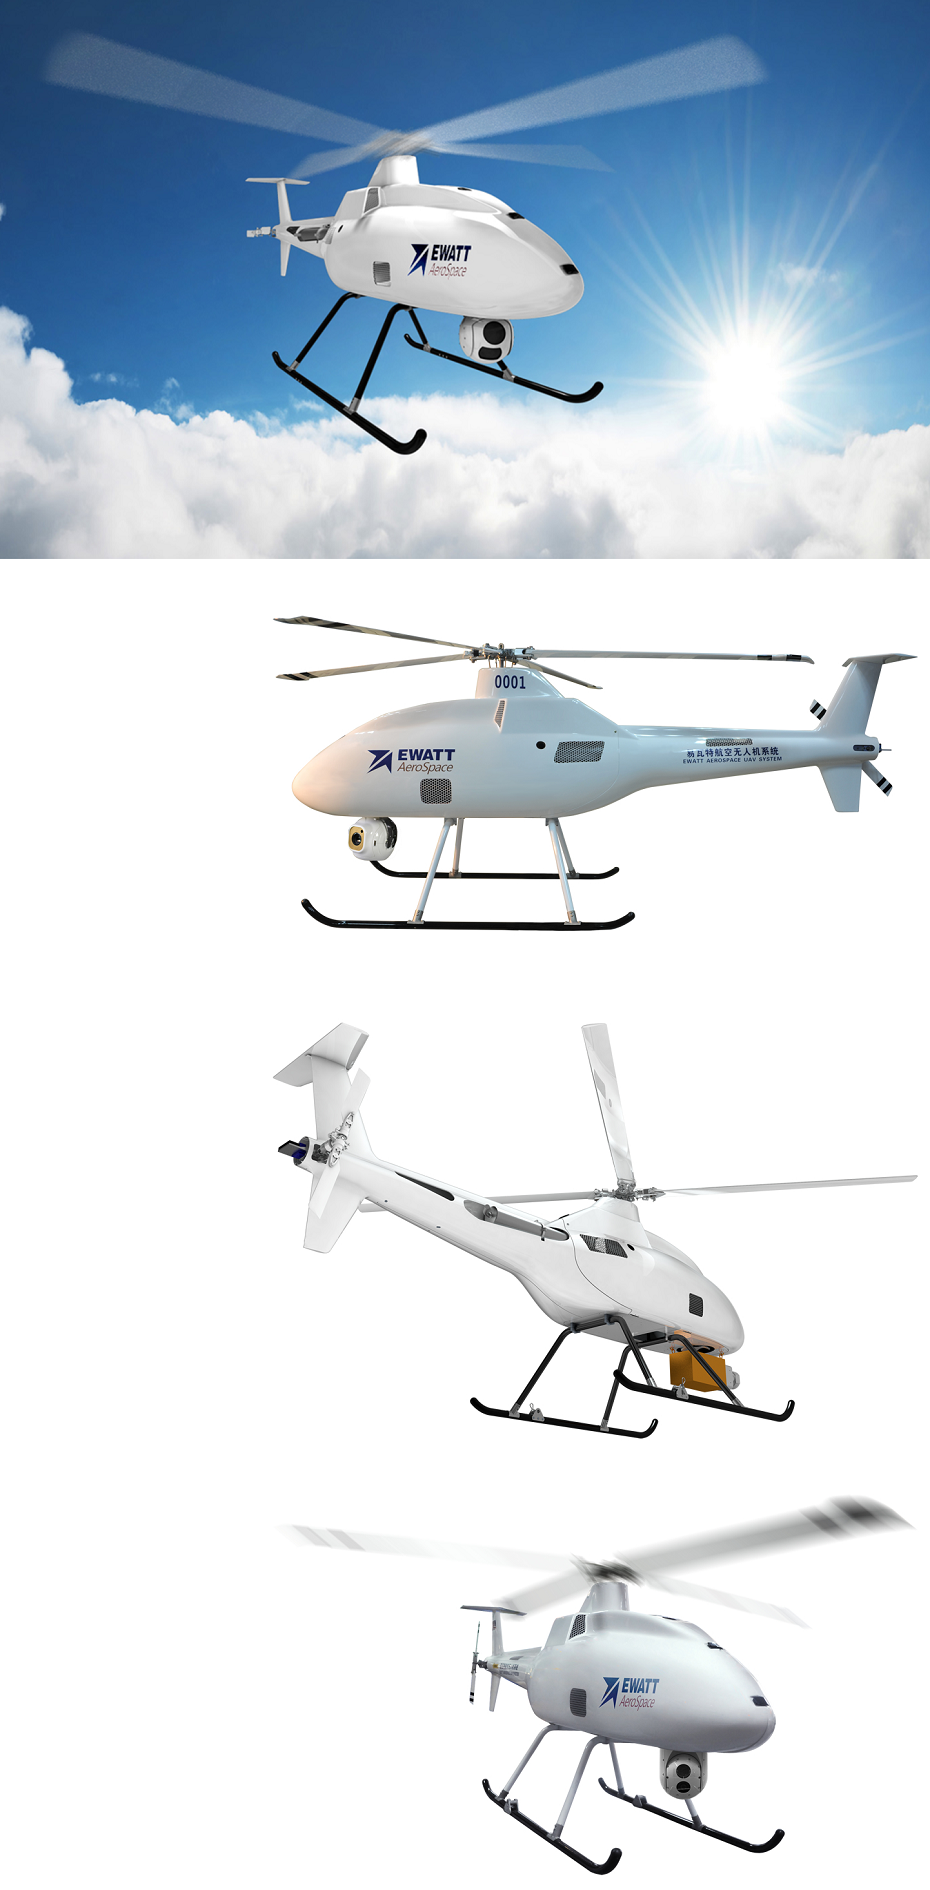 油动直升机 EWZ-H100 概述 - EWATT易瓦特 智创无限可能.png